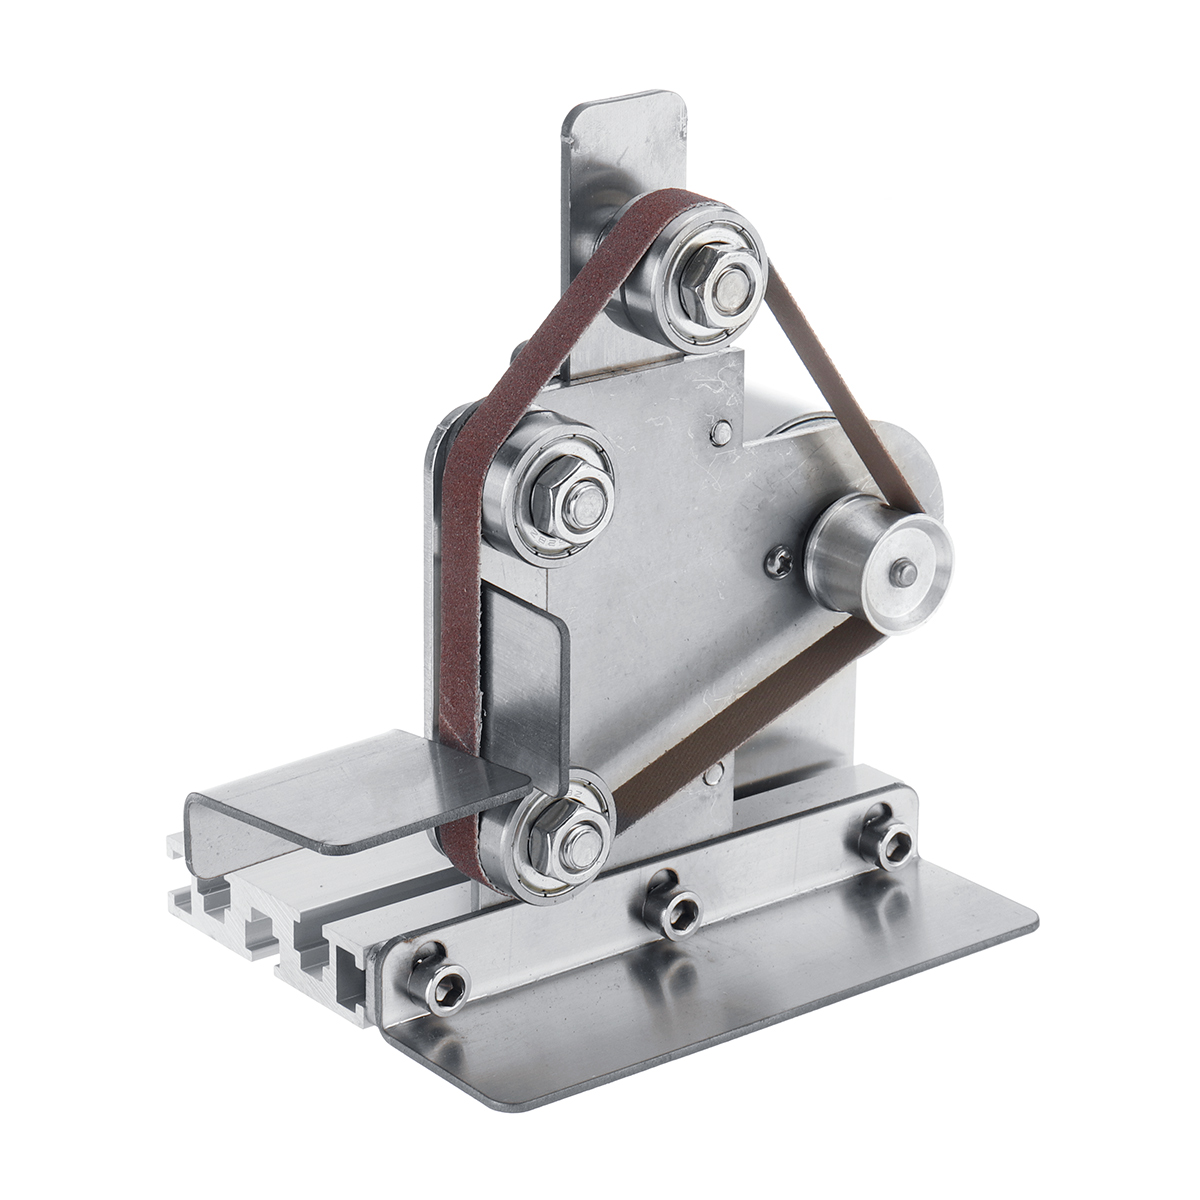 Mini-Electric-Belt-Sander-Grinder-DIY-Metal-Wood-Polishing-Grinding-Machine-Sanding-Belt-Sharpener-1515456-6